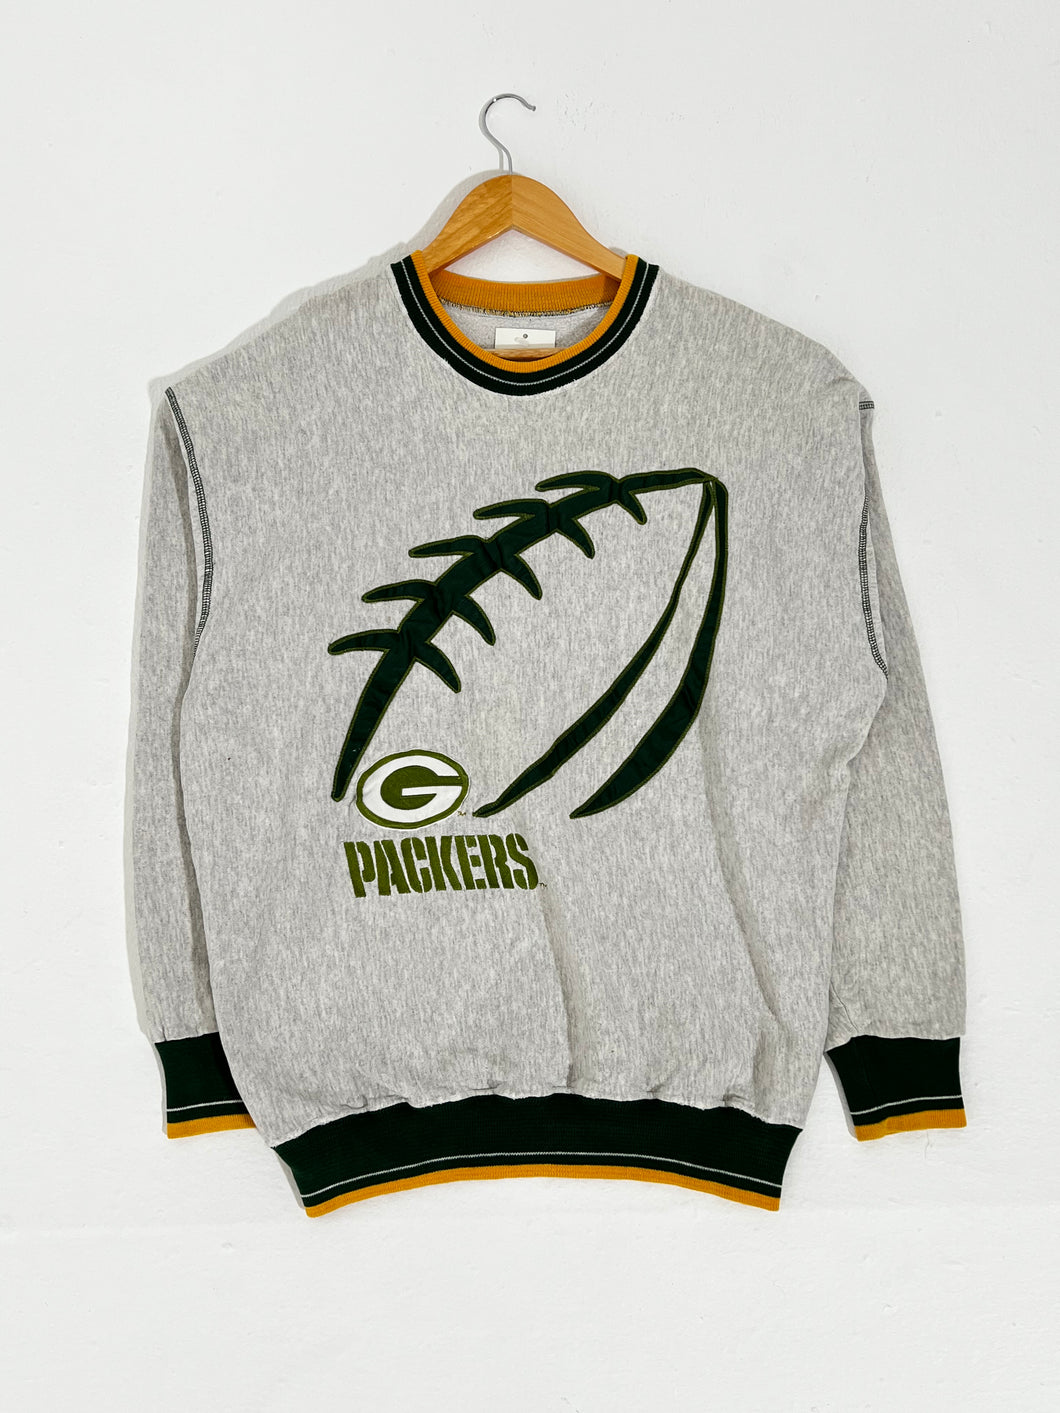 Vintage Packers Football Stitch Crewneck Sz. XL